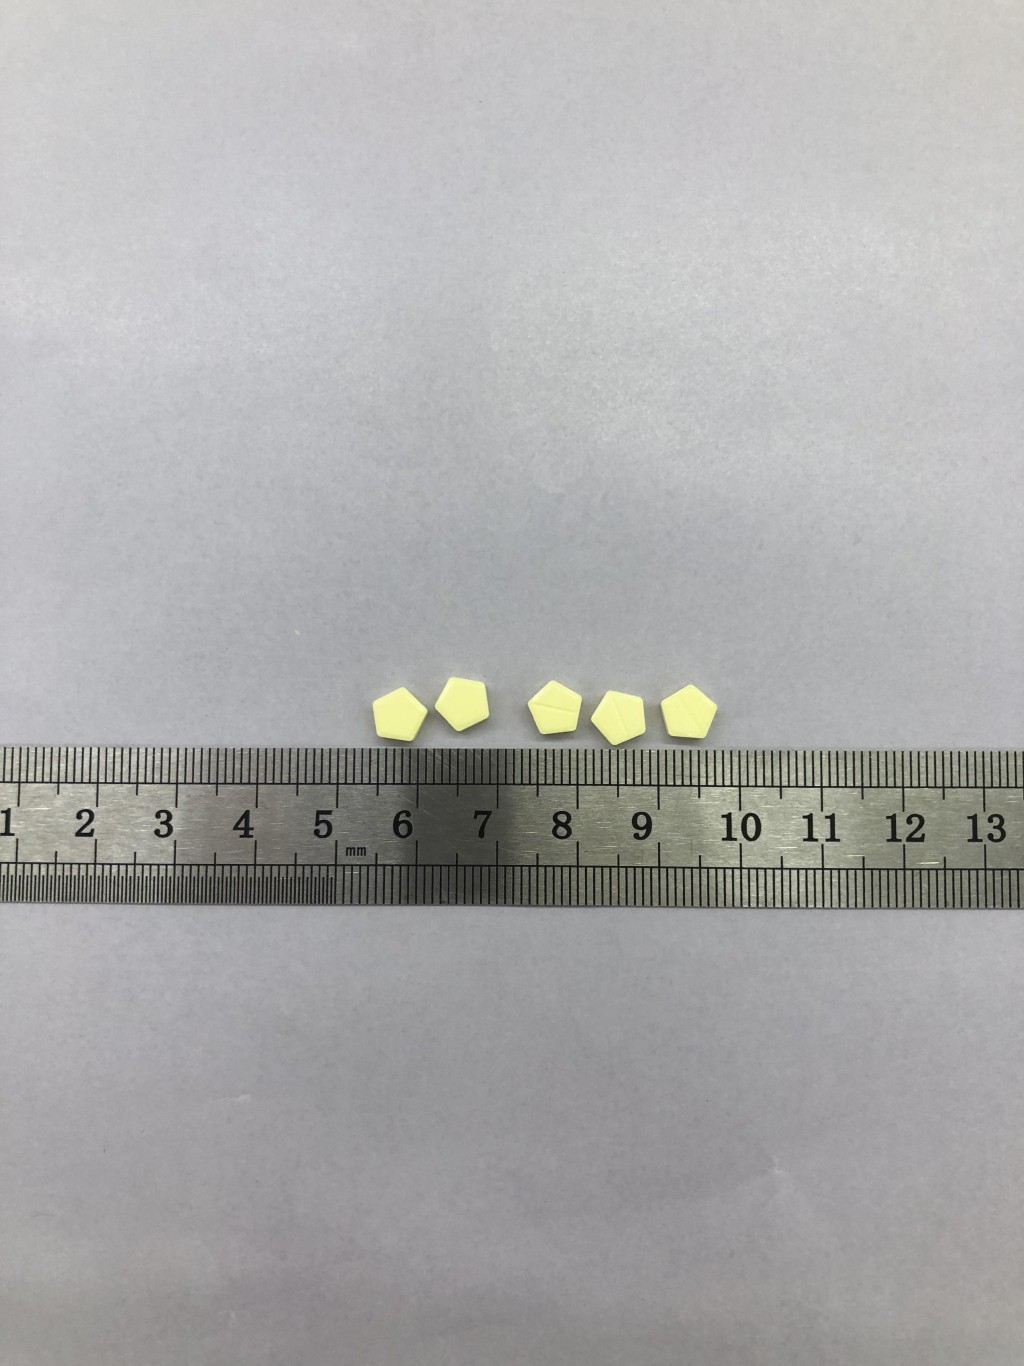 衞生署呼吁市民应停用中医黄伙章处方的一款黄色药片，因为它可能含有未标示的西药成分。政府新闻处图片